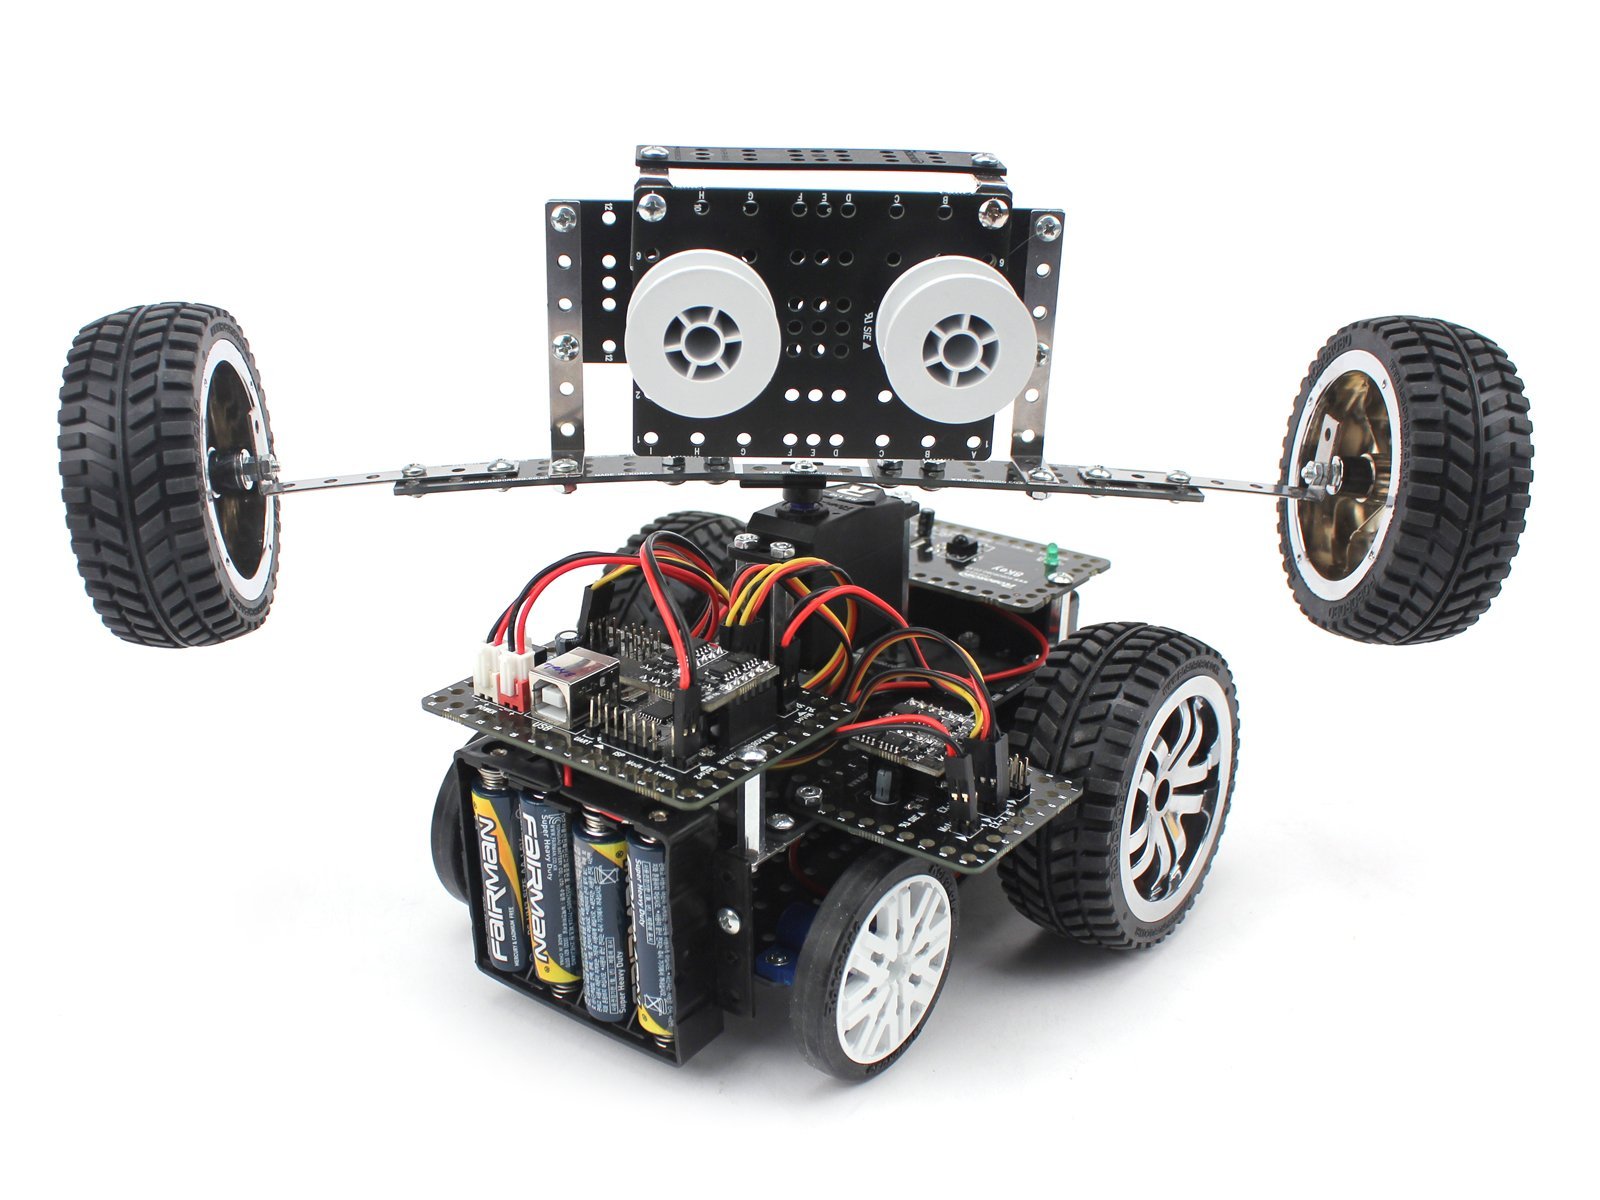 Ресурсный набор Robo Kit 2-3 для изучения колеcных роботов  и STEM технологий  к набору Robo kit 1